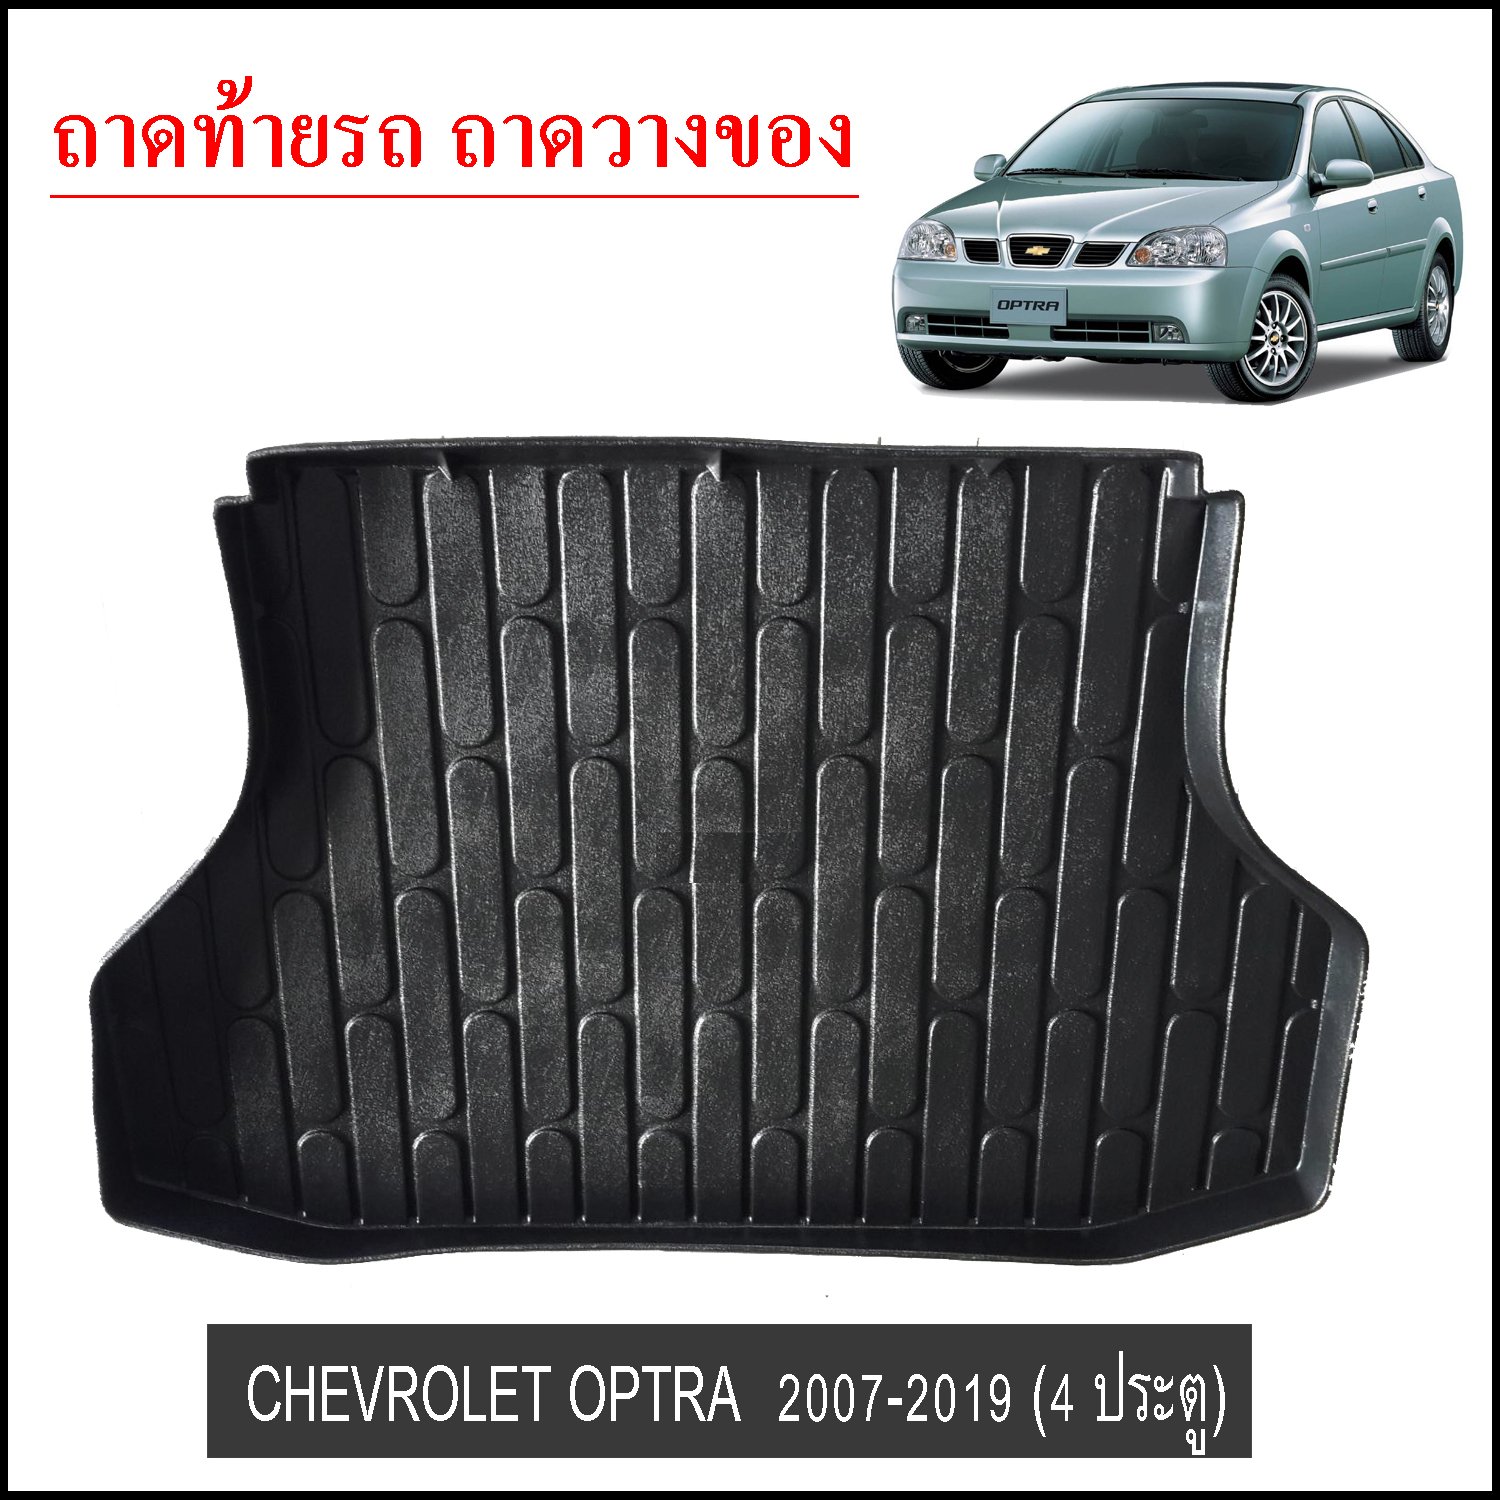 ถาดท้ายวางของ Chevrolet Optra 2007-2019